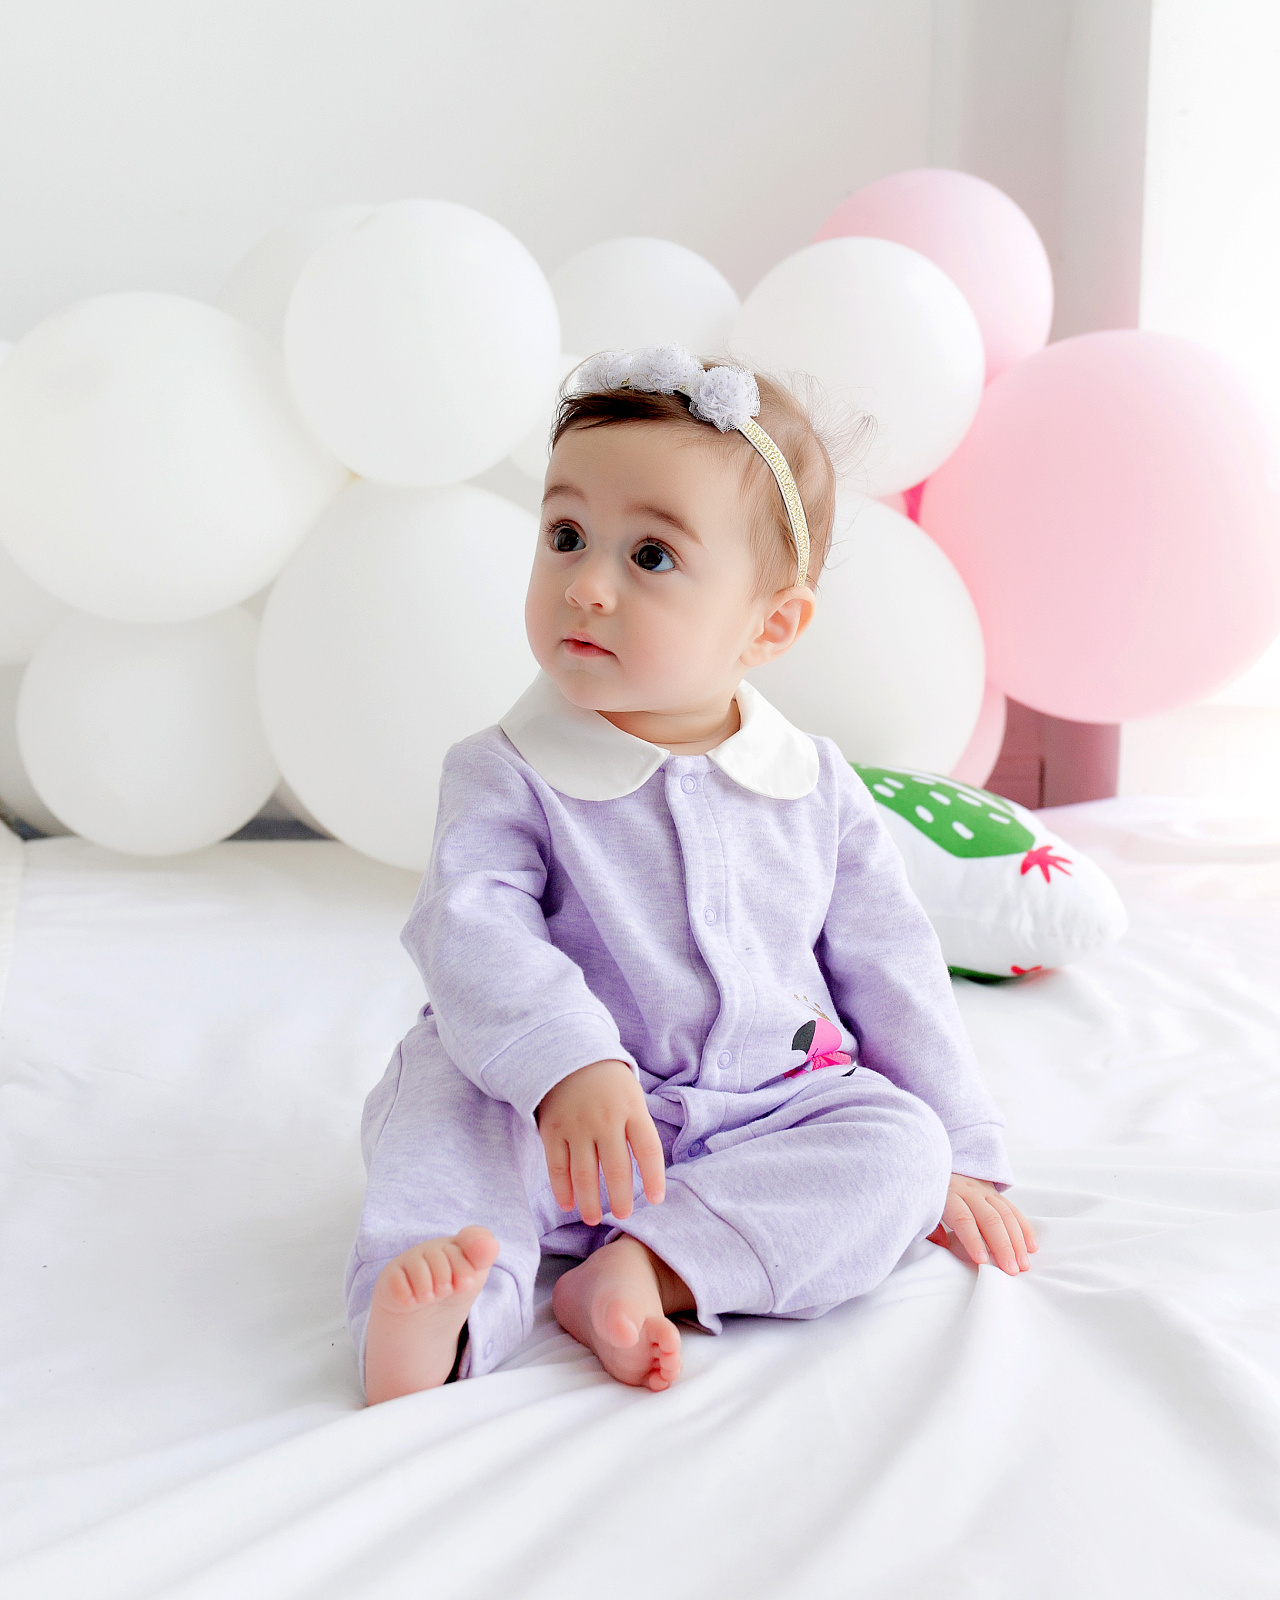 哪些材质的衣服适合婴儿 秋季怎么选购婴儿衣服 _八宝网